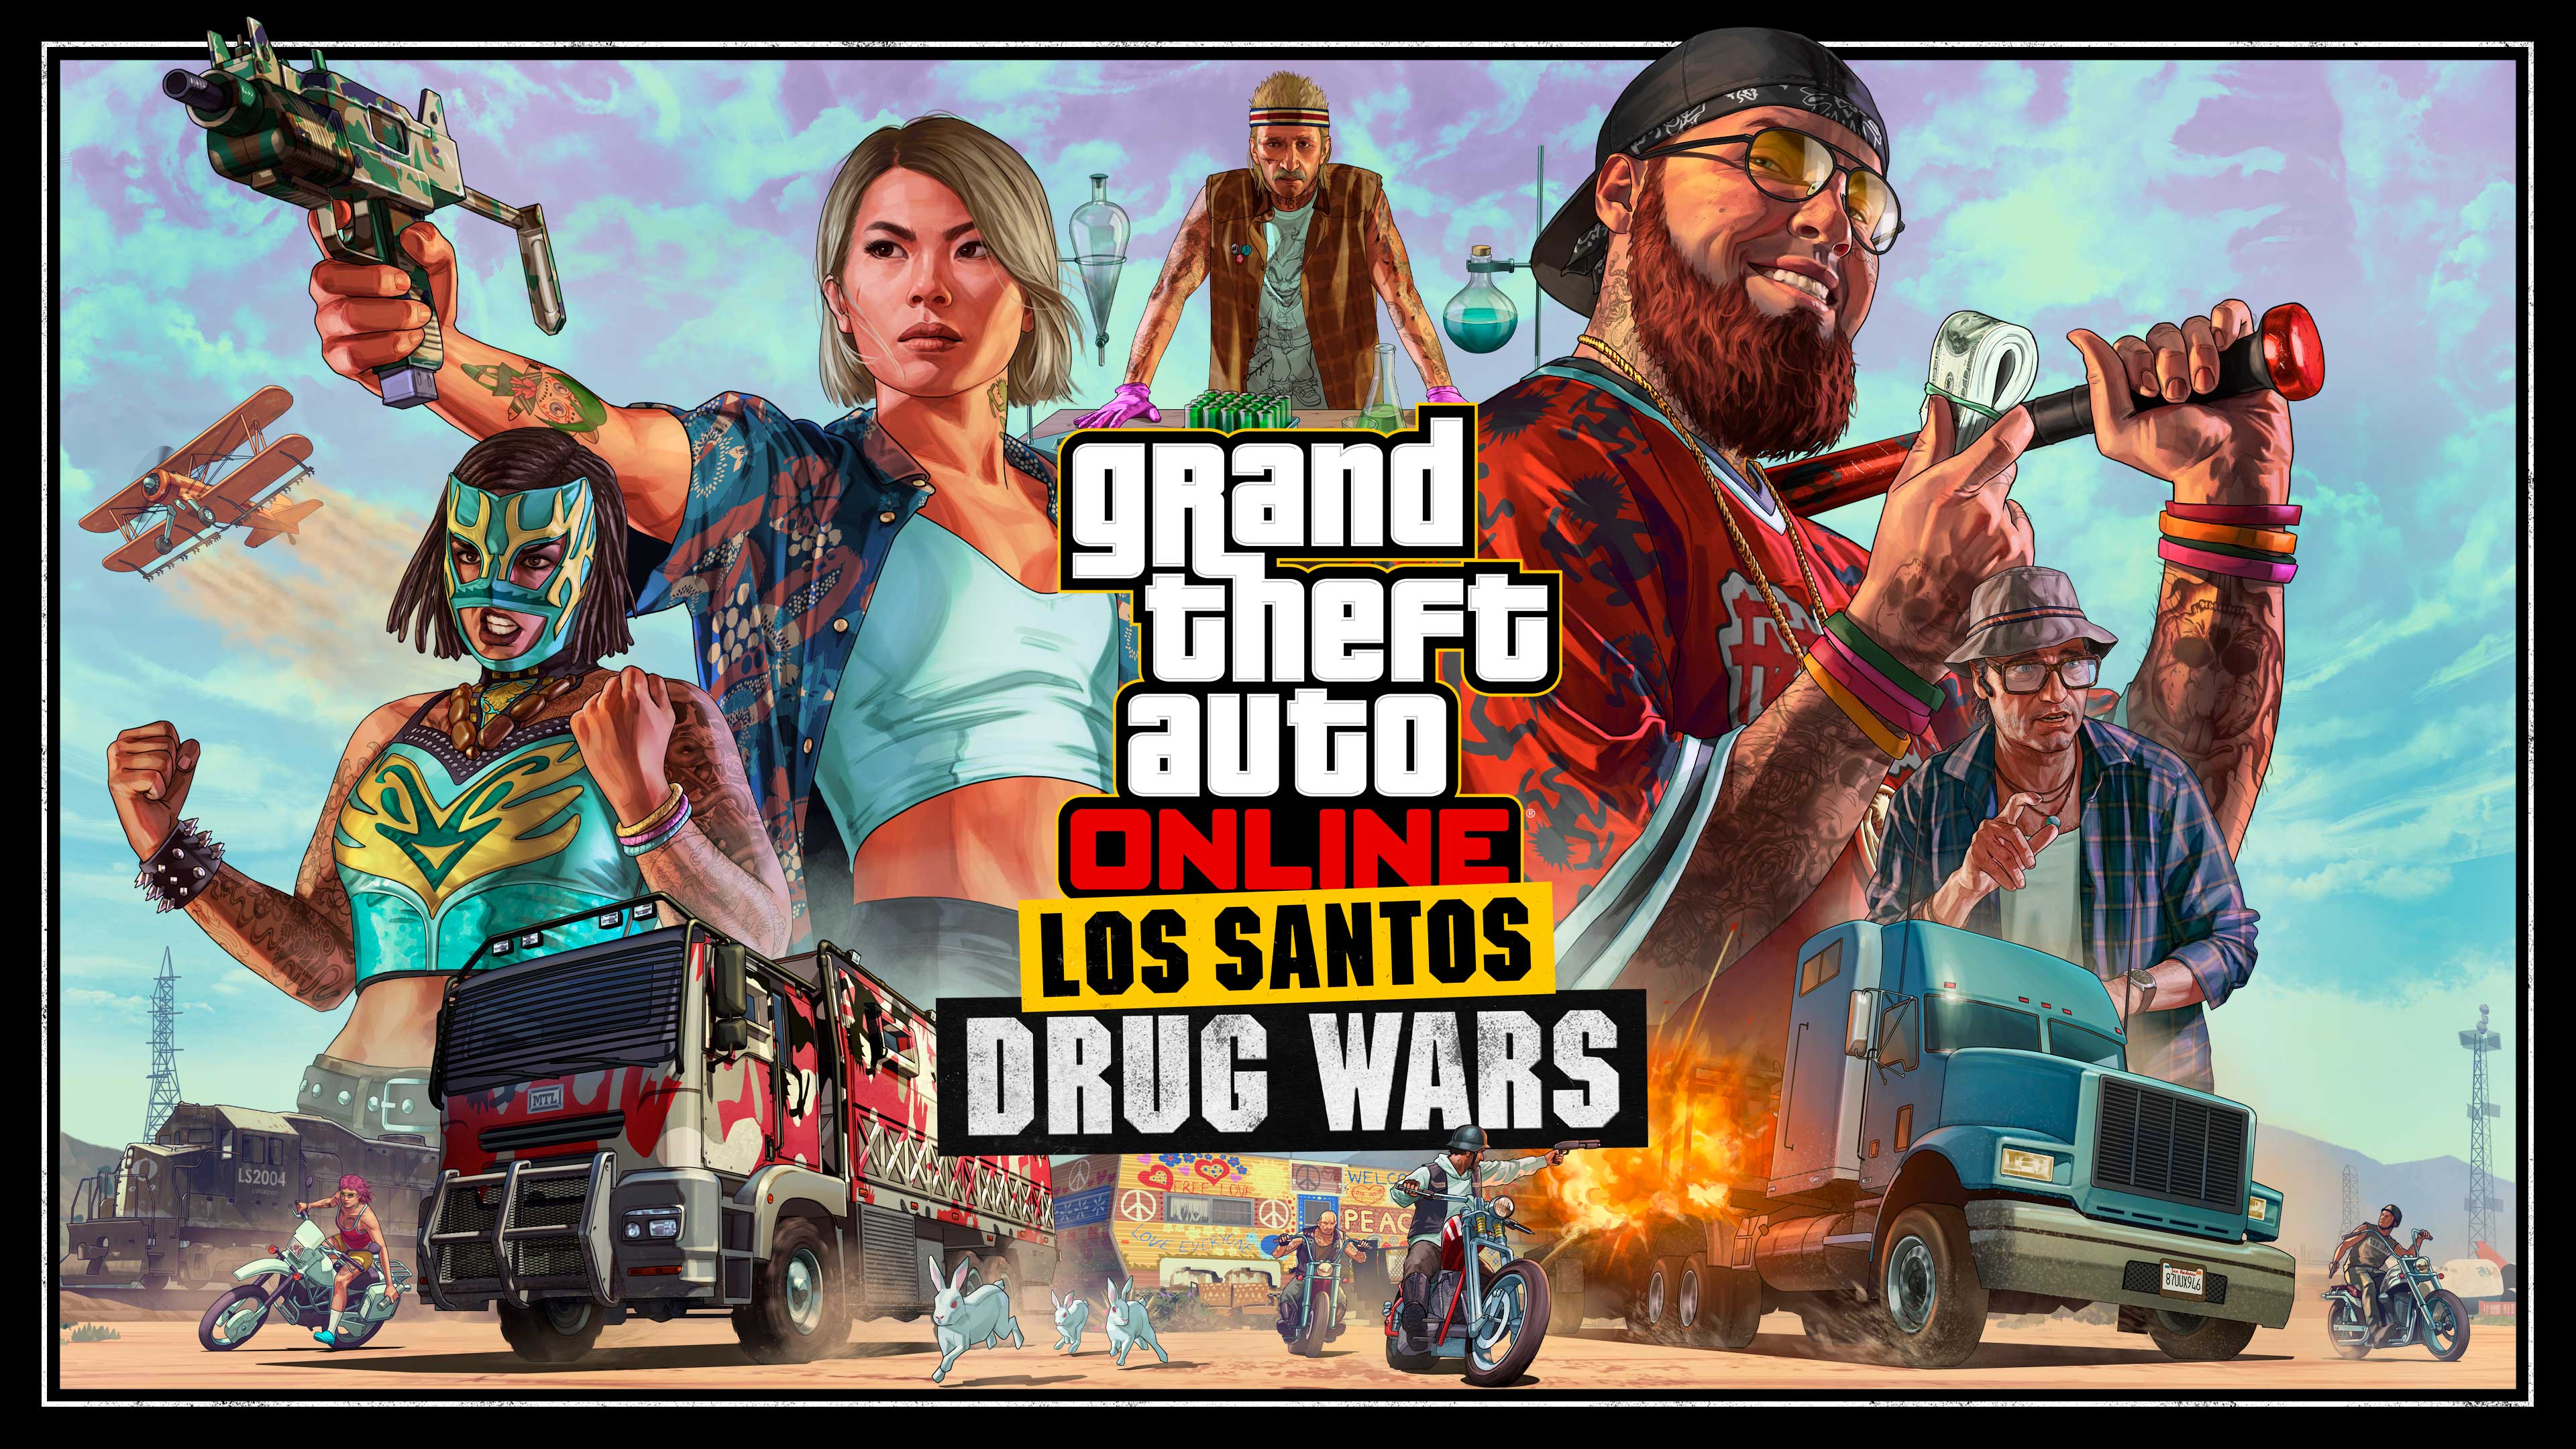 More information about "GTA Online: Drugs Wars vanaf 13 december speelbaar"